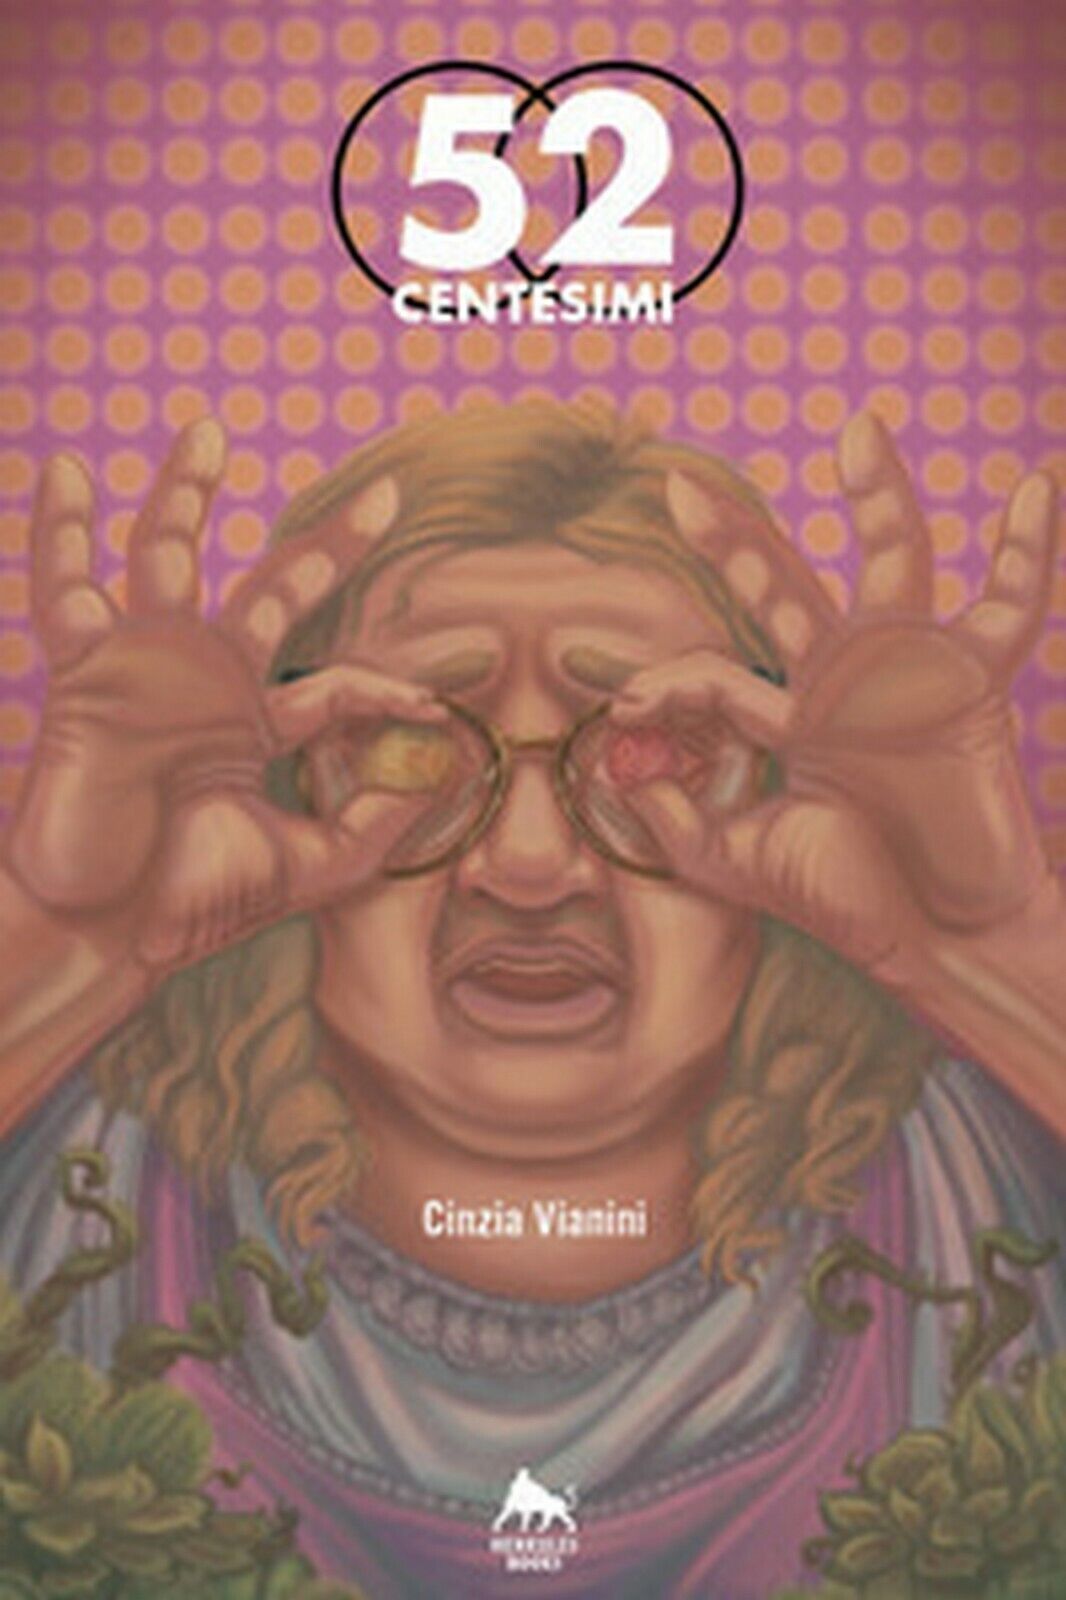 52 centesimi  di Cinzia Vianini,  2019,  Herkules Books